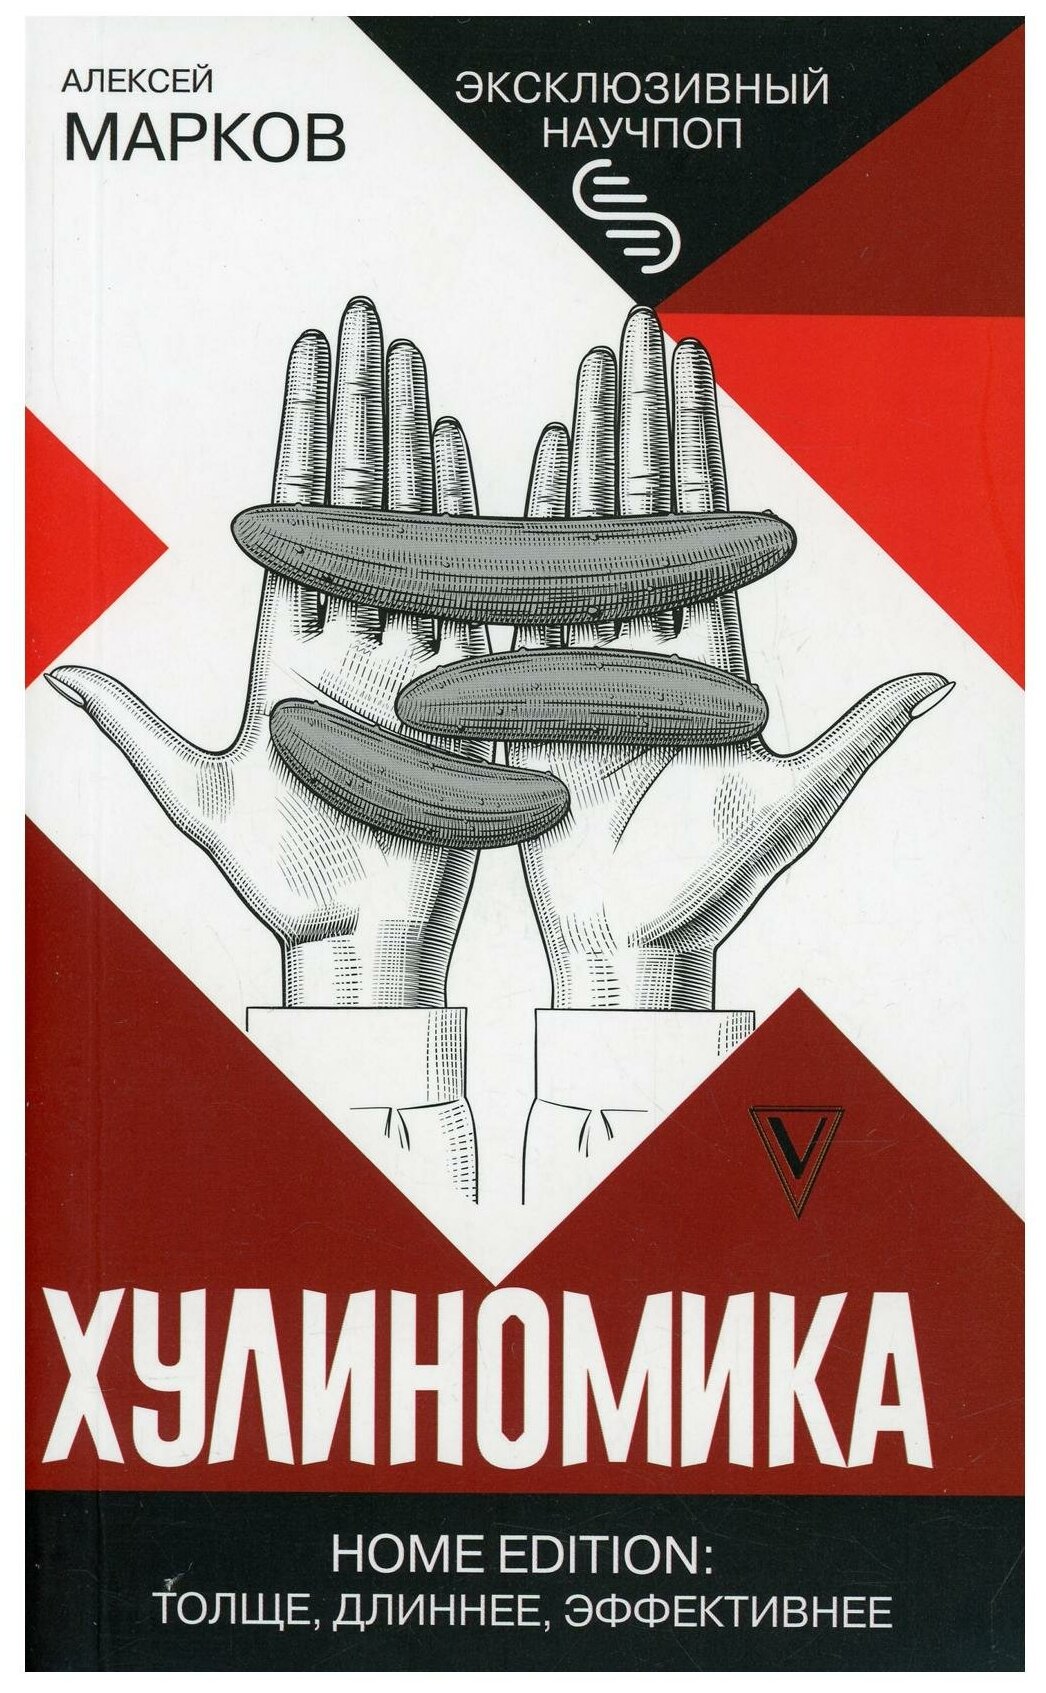 Марков А. В. Хулиномика. Home edition: толще, длиннее, эффективнее. Эксклюзивный научпоп